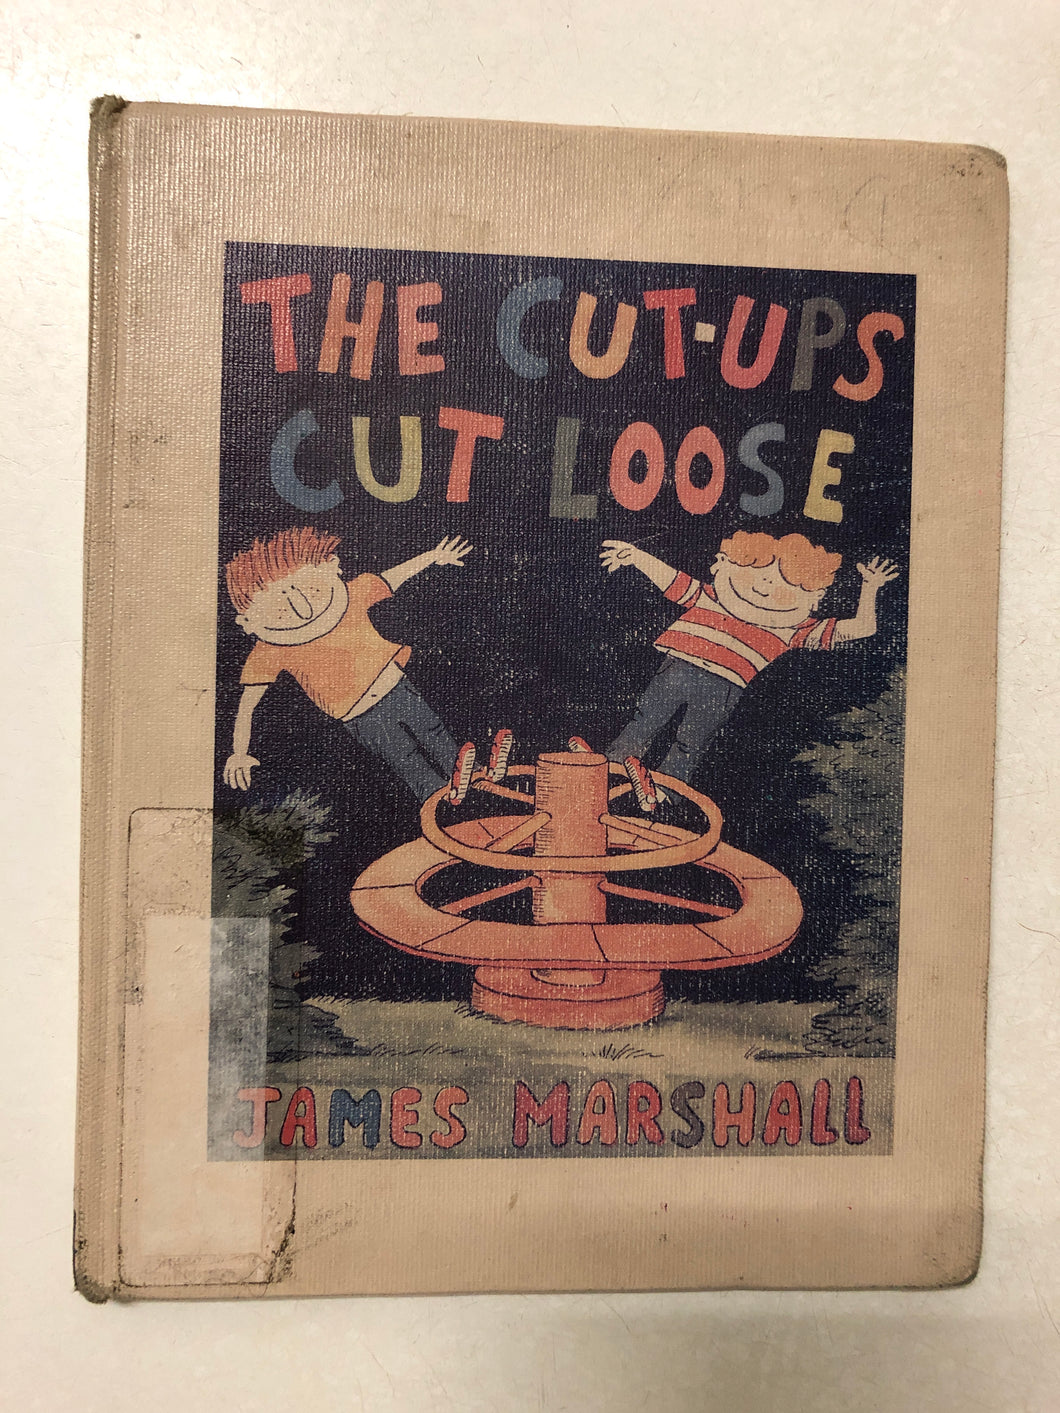 The Cut-Ups Cut Loose